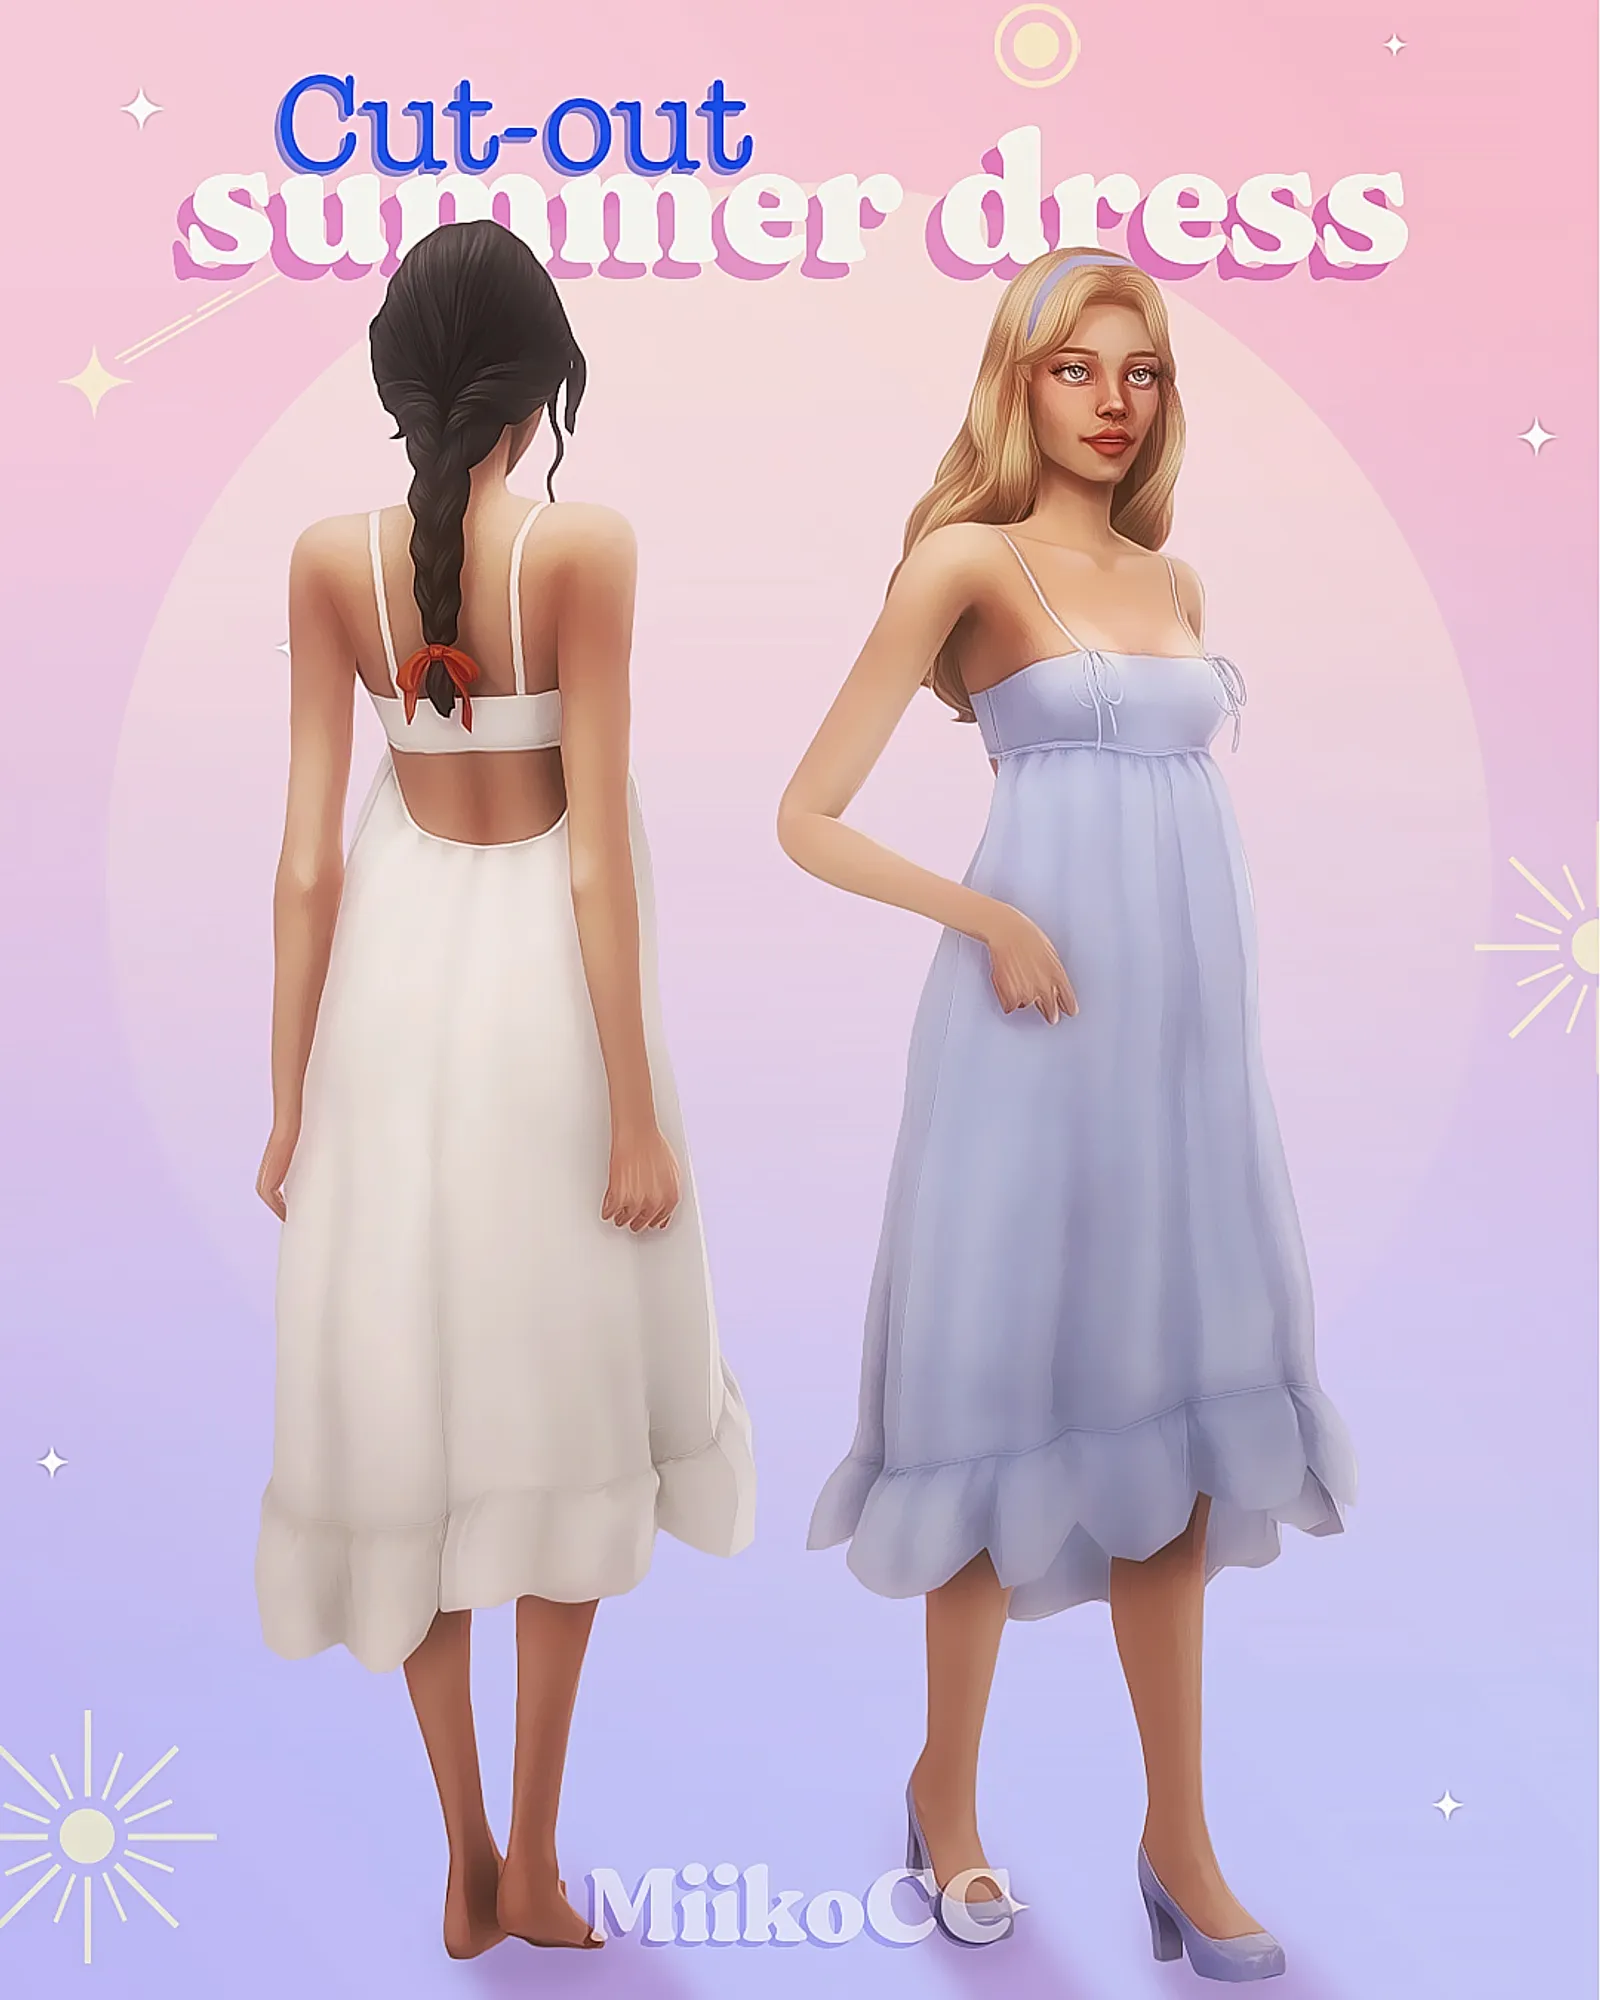 Cut-out summer dress